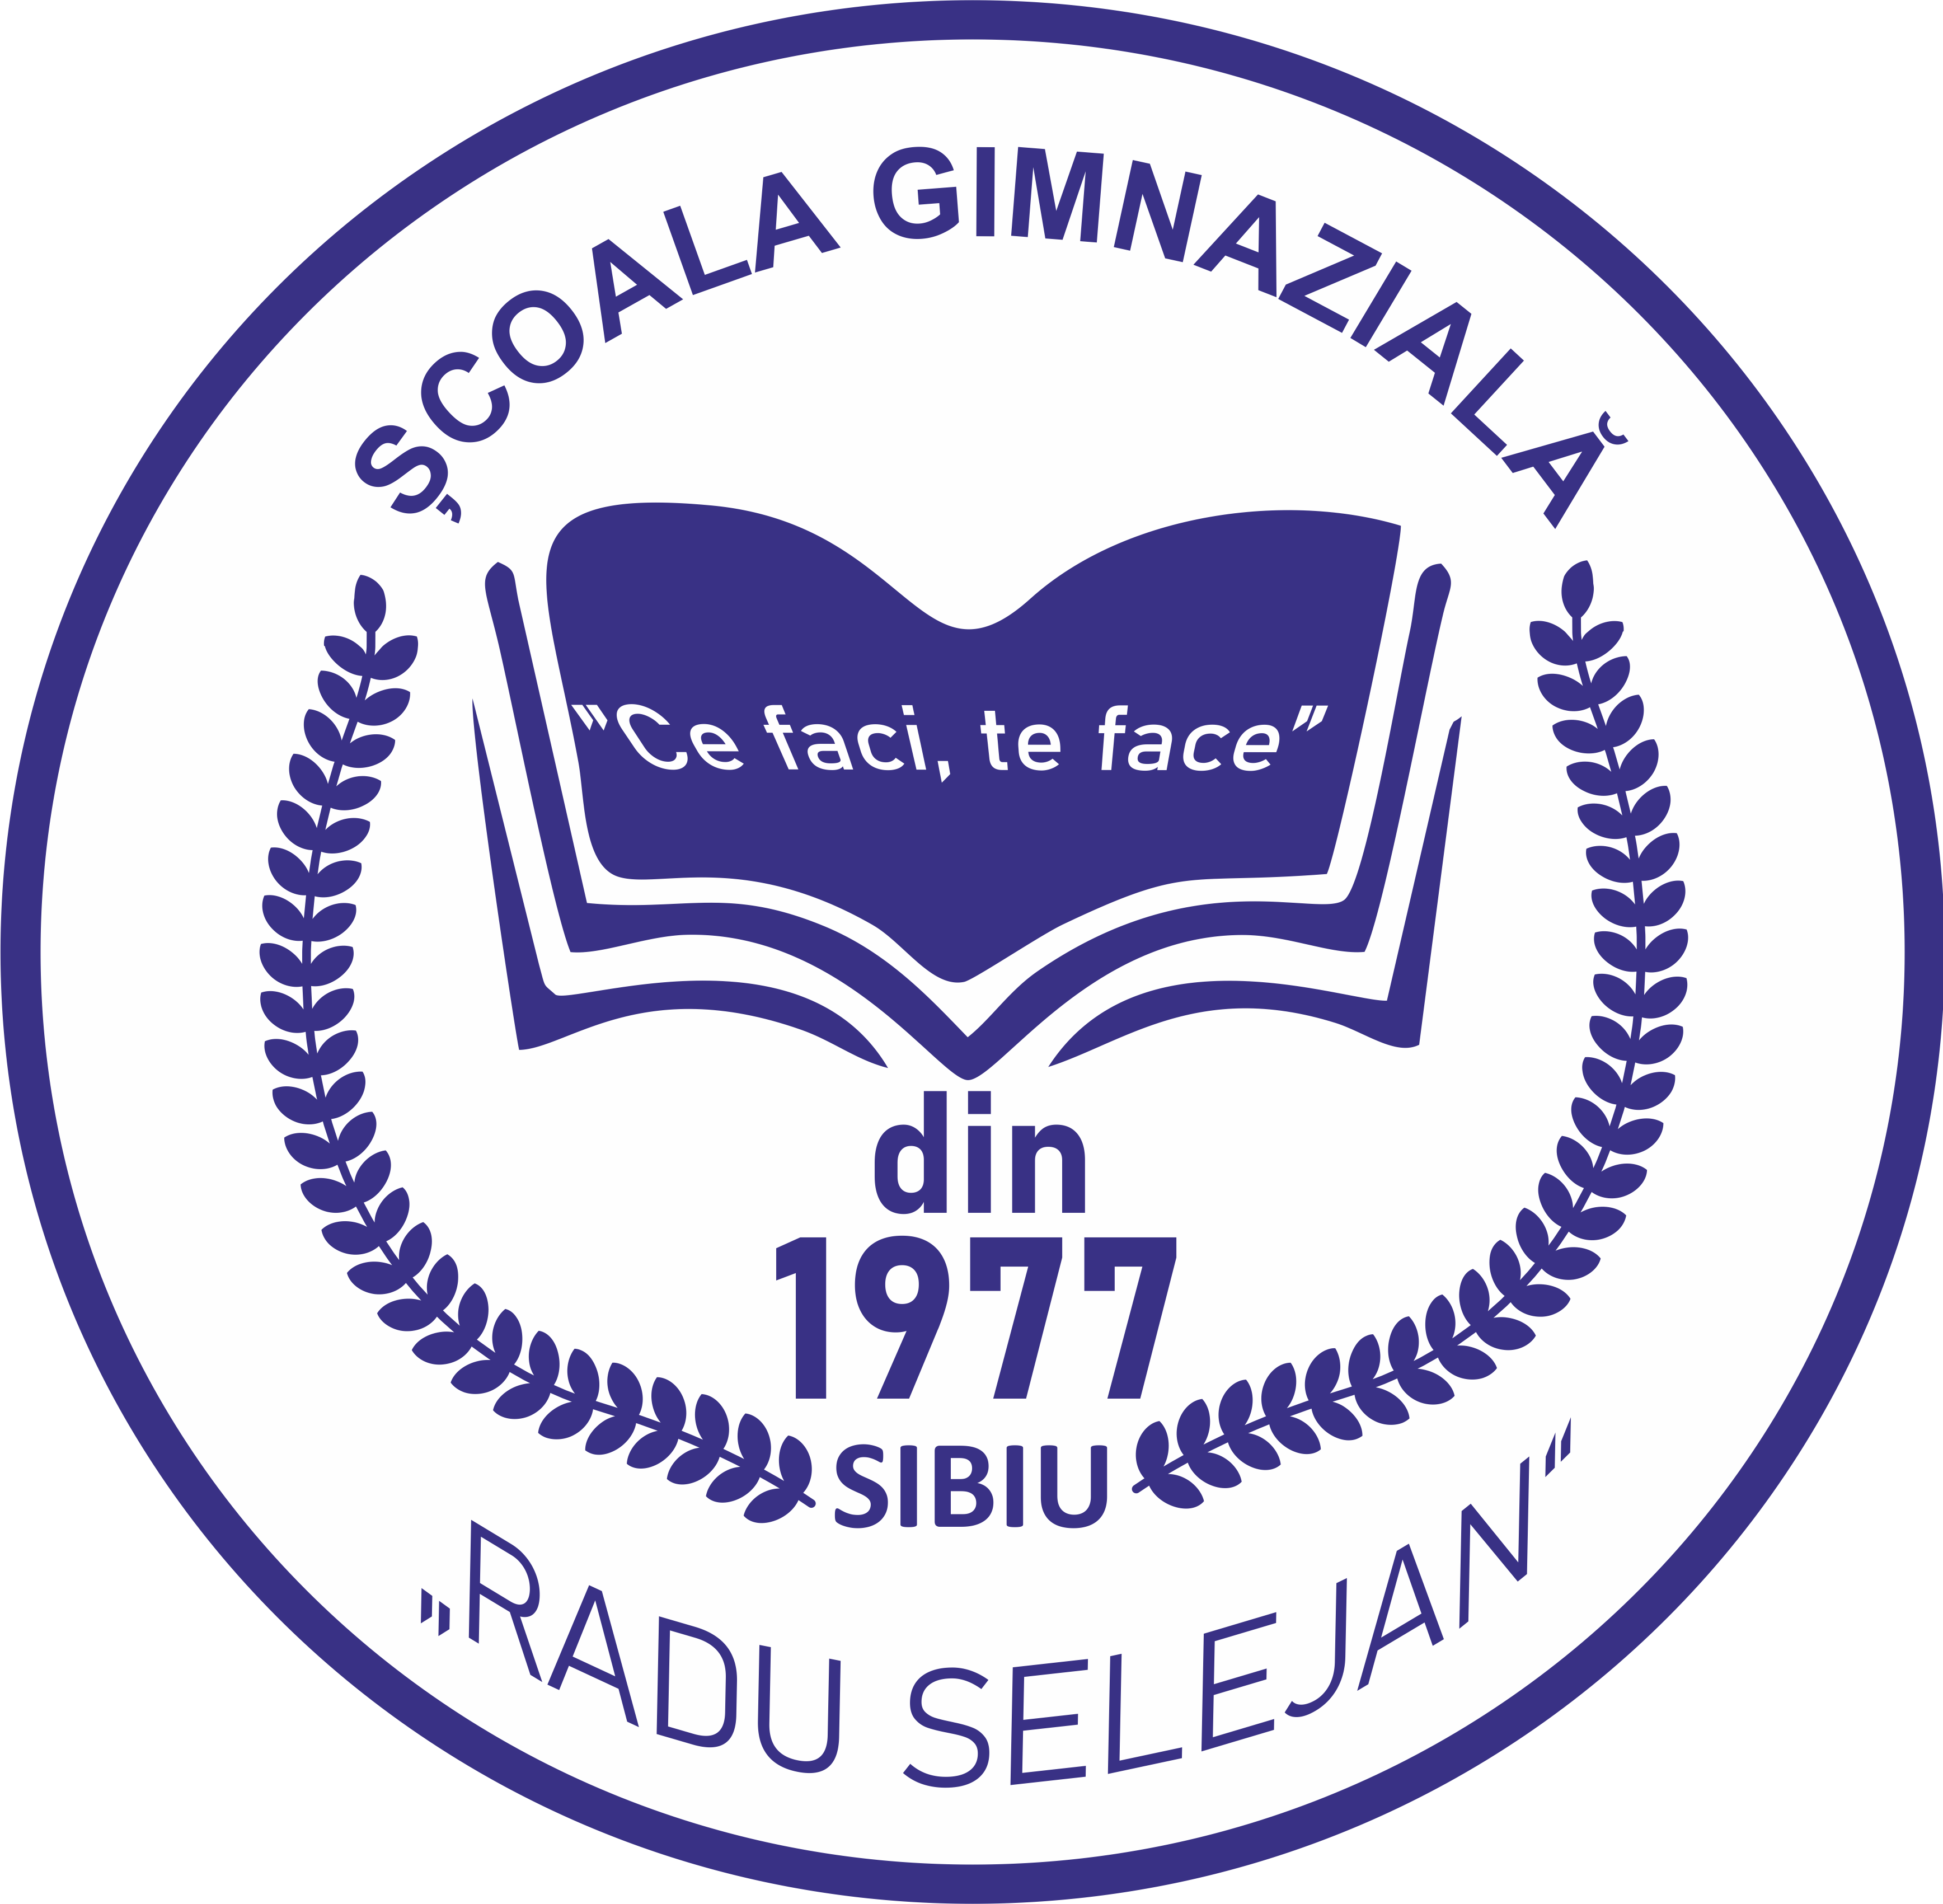 Școala Gimnazială "Radu Selejan" Sibiu